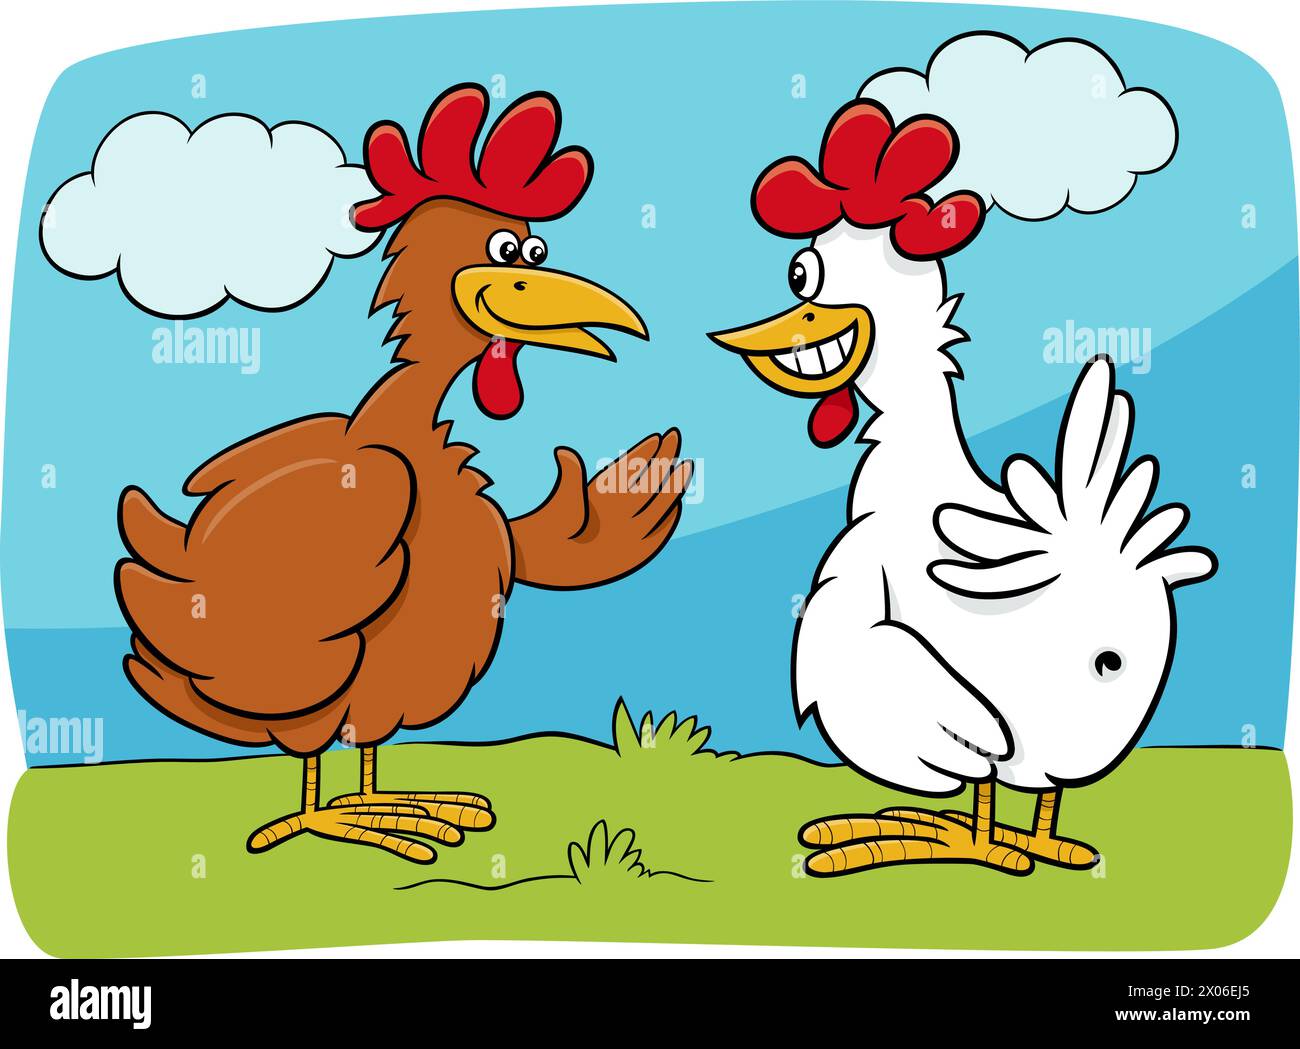 Ilustración de dibujos animados de dos personajes de aves de granja de pollos hablando Ilustración del Vector